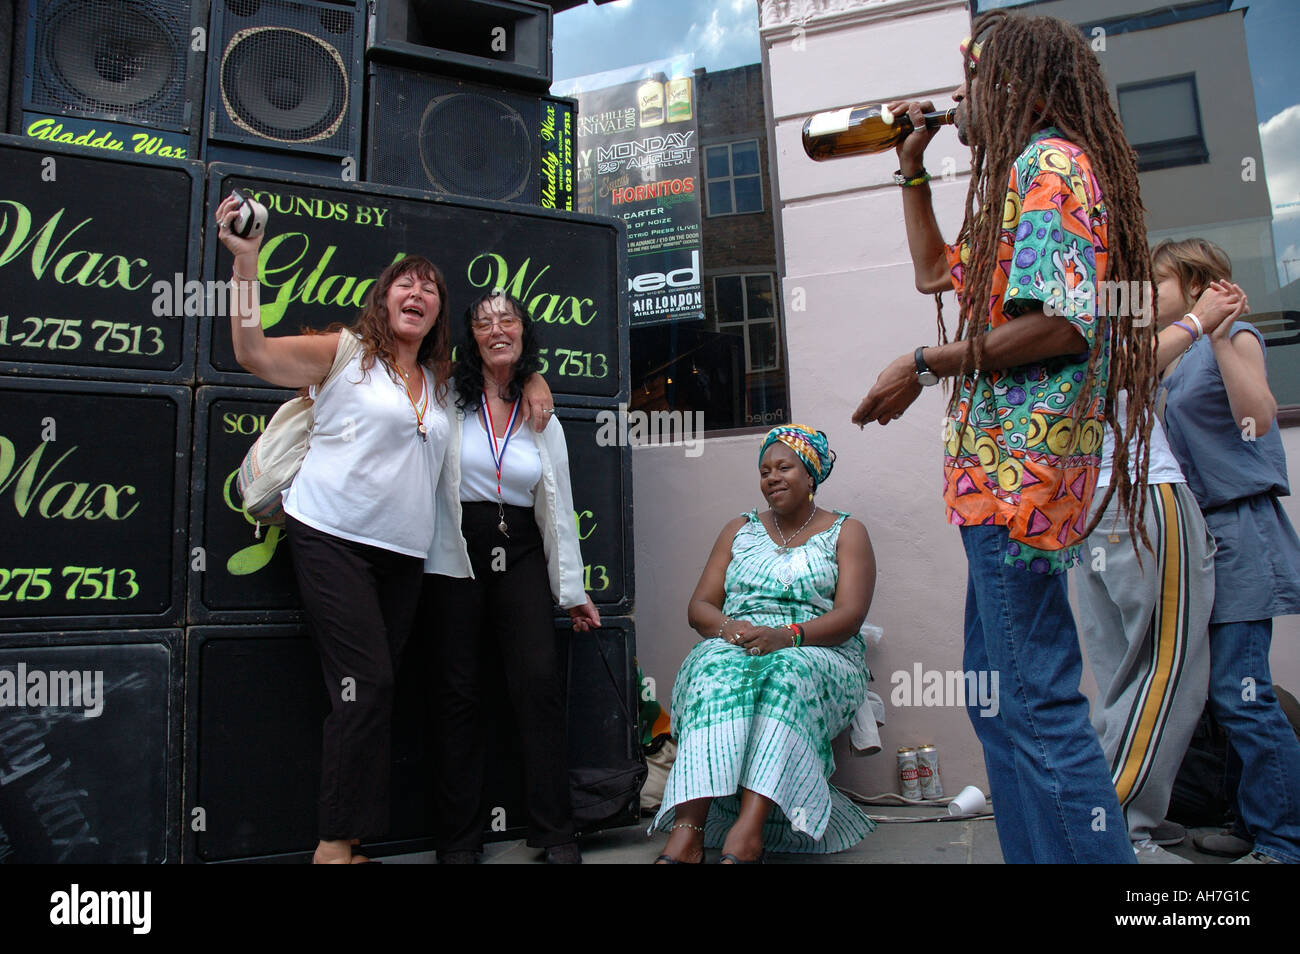 La danse de groupe multi-culturel et de socialisation à Notting Hill carnaval annuel. Banque D'Images